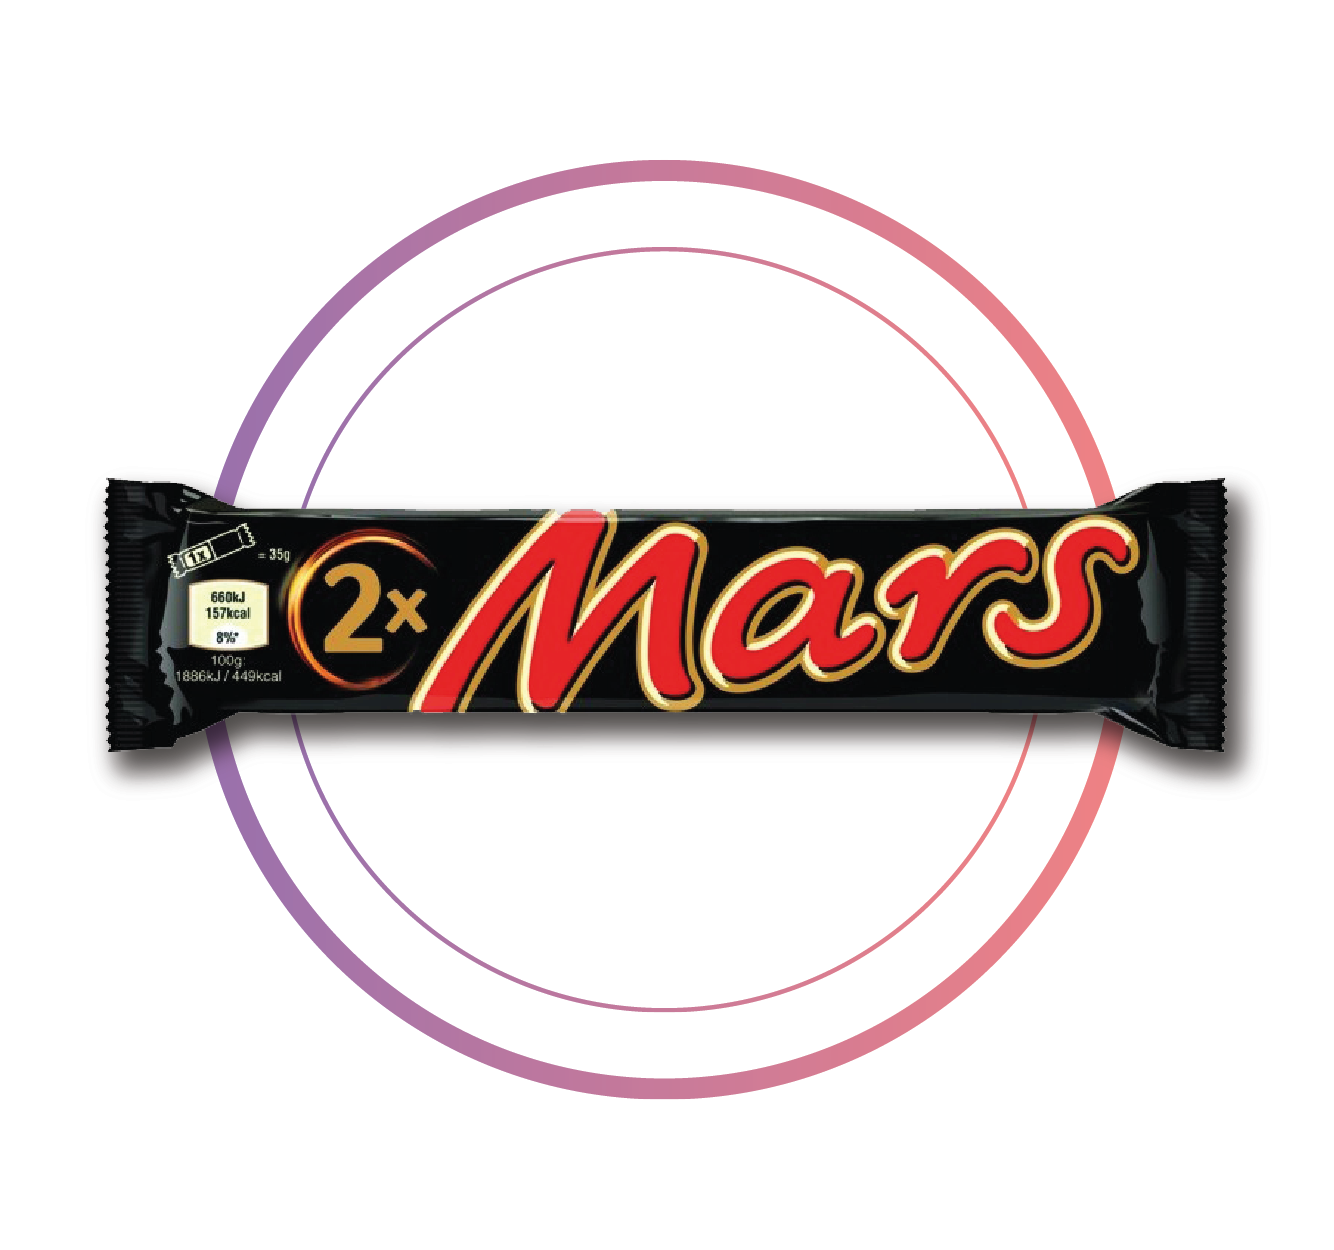 Mars 2 Pack 70g